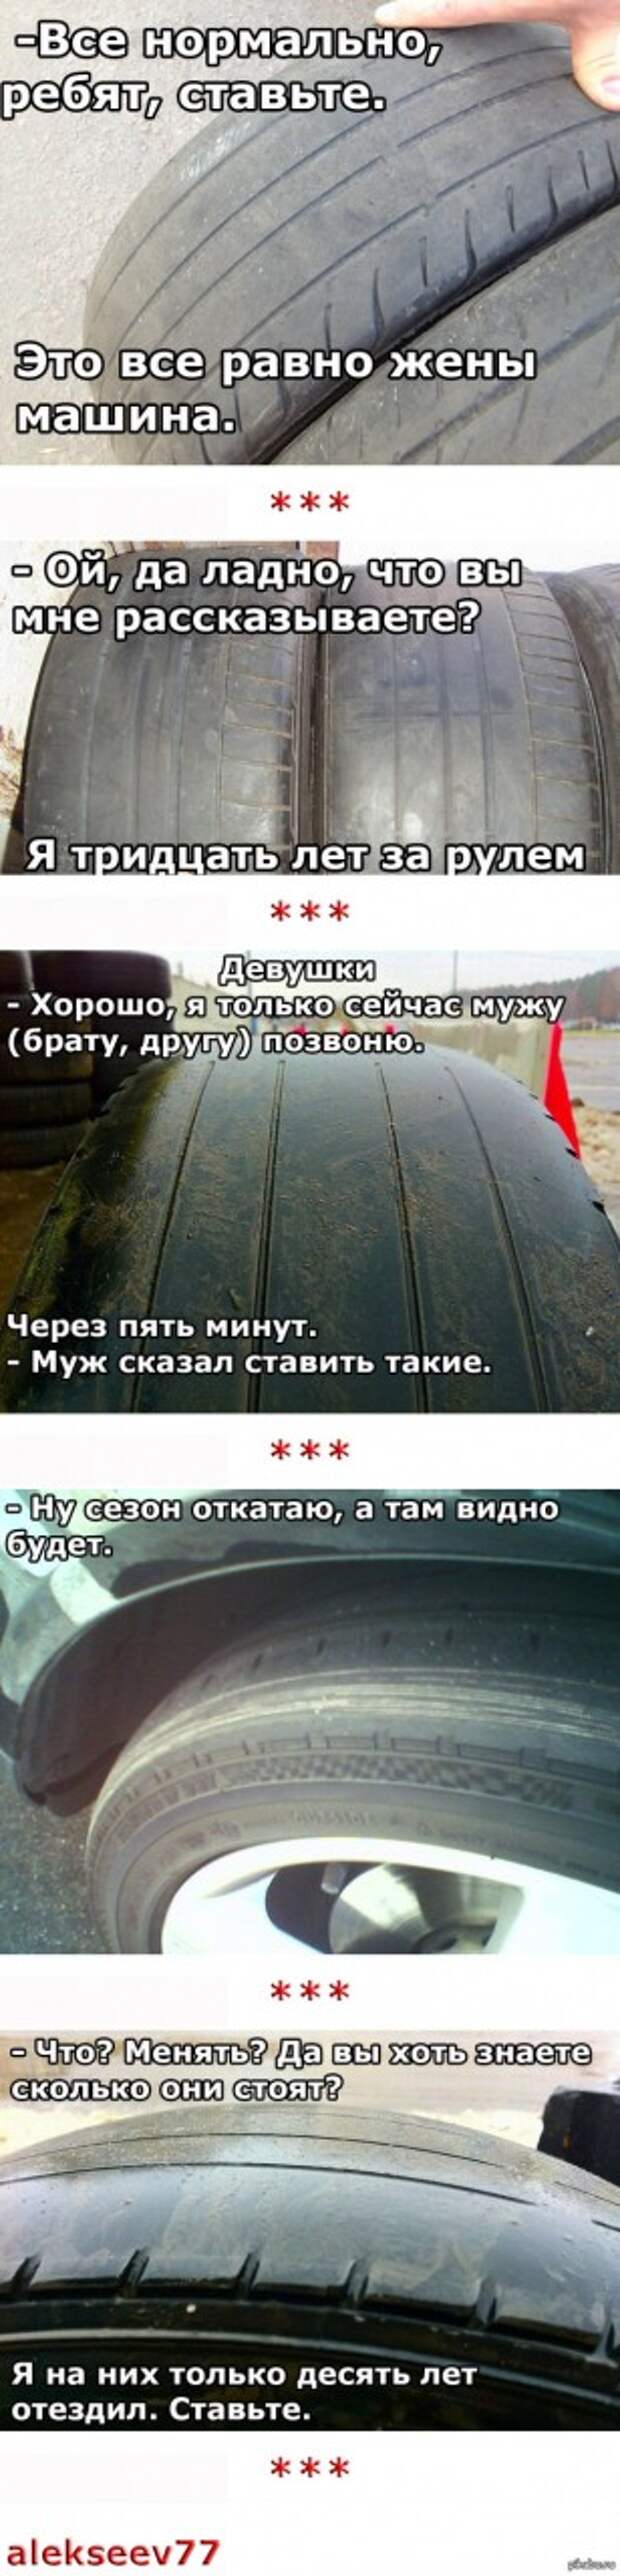 Когда говоришь клиенту, что у него шины сильно изношены. Топ 5 ответов. В ответ на <a href="http://pikabu.ru/story/i_moy_lyubimyiy_vopros_ot_klienta_shinomontazha_3786744">http://pikabu.ru/story/_3786744</a>